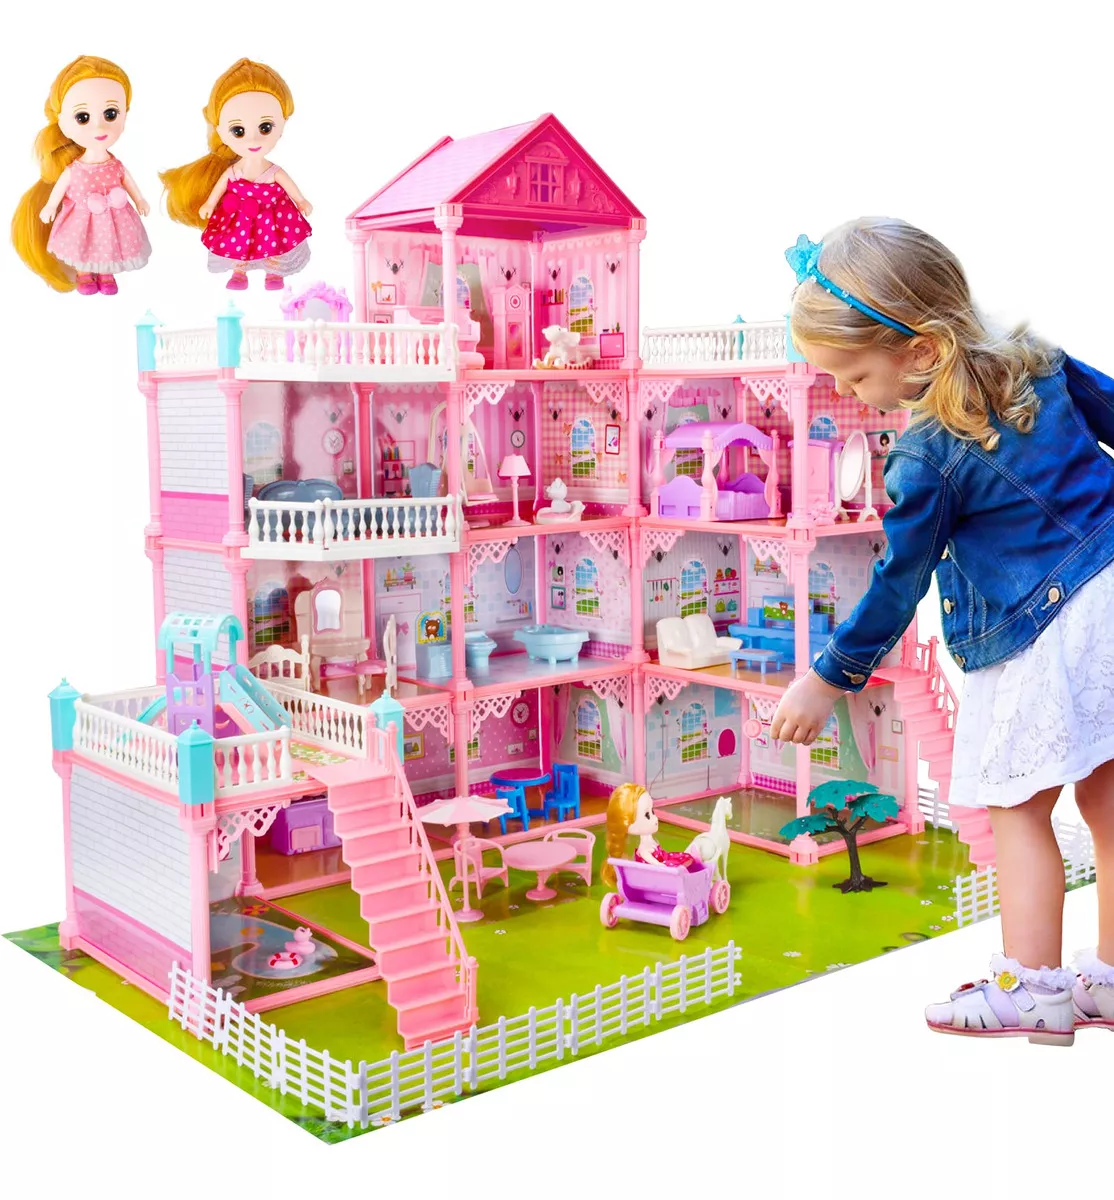 Tercera imagen para búsqueda de casa de muñecas